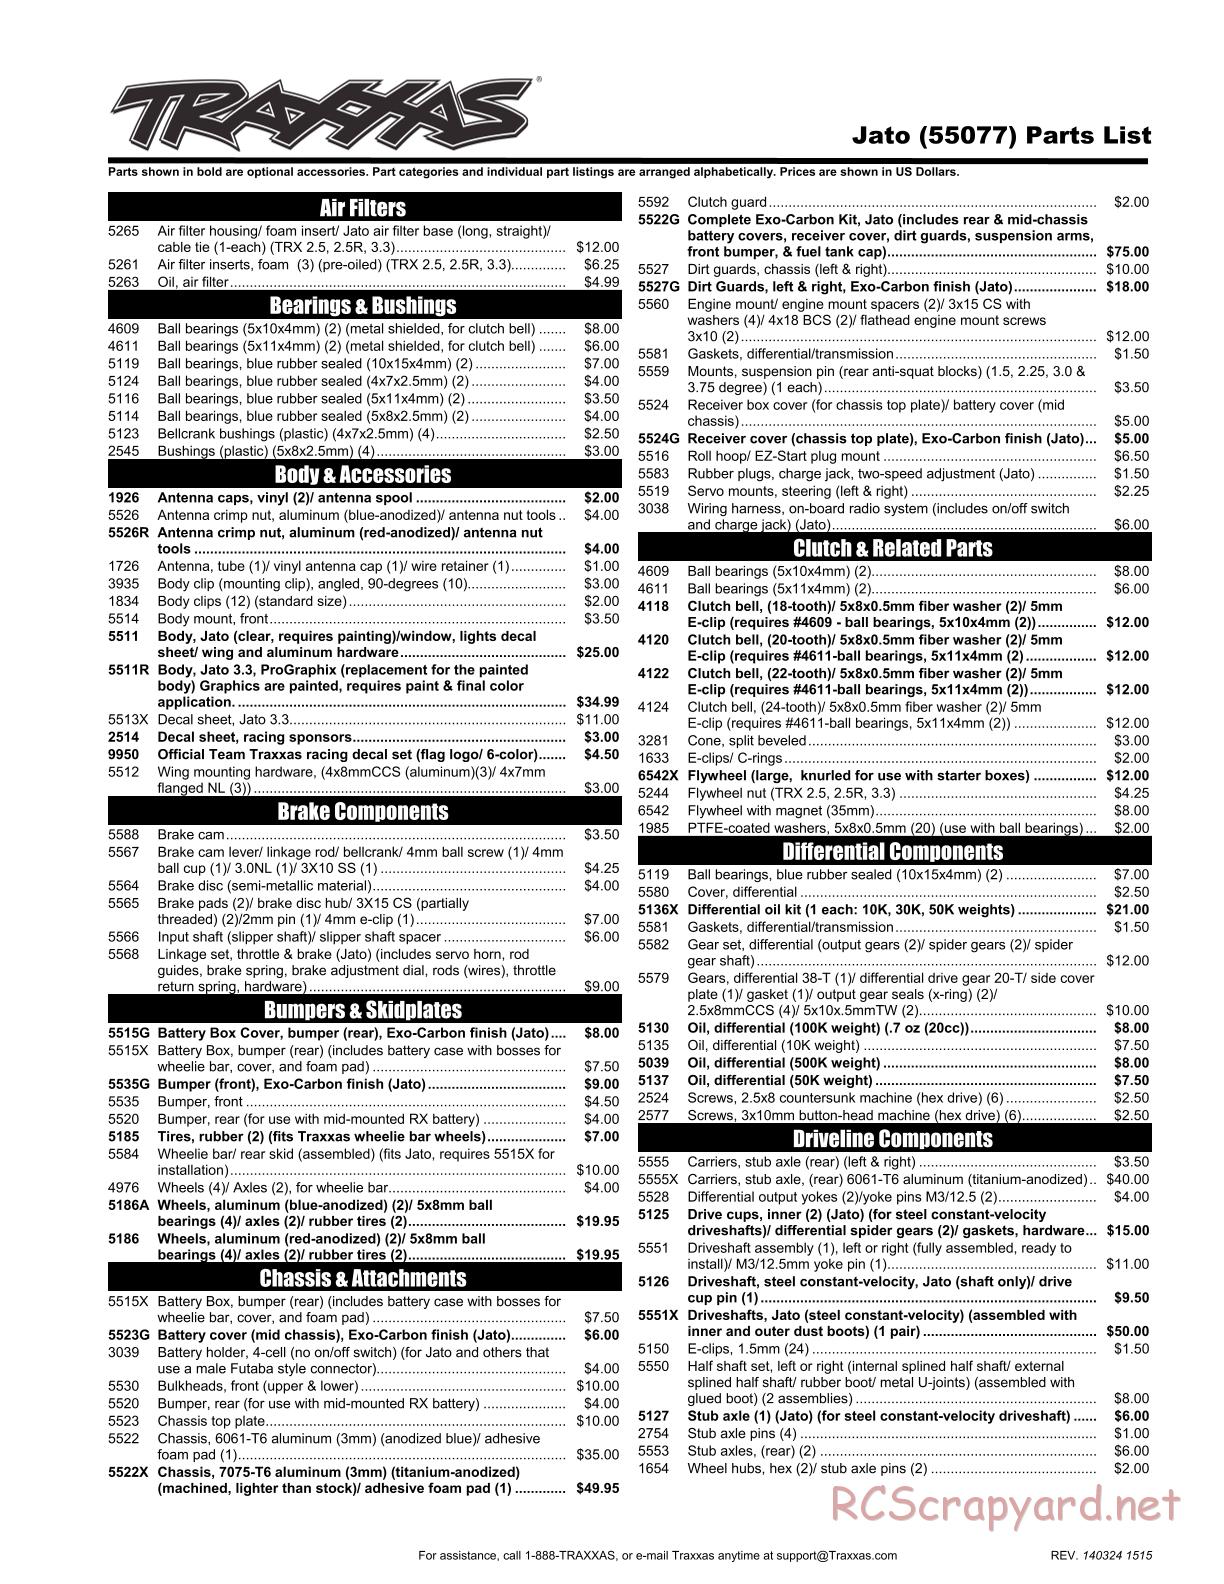 Traxxas - Jato 3.3 (2014) - Parts List - Page 1